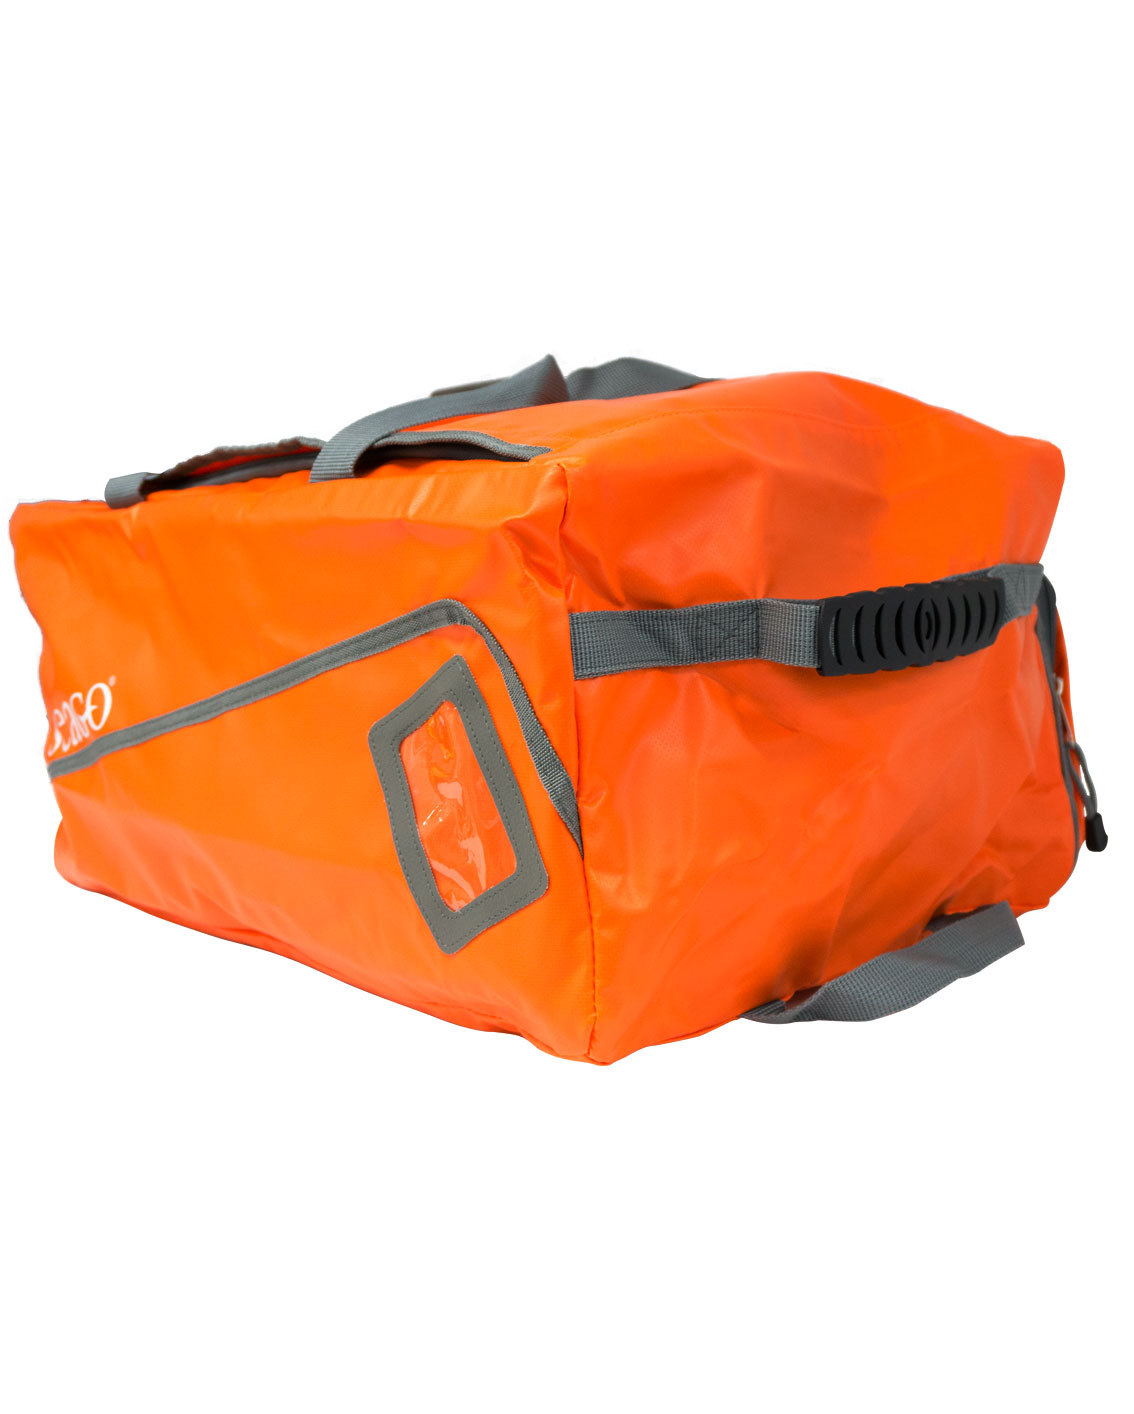 Lifejacket bag - Seago